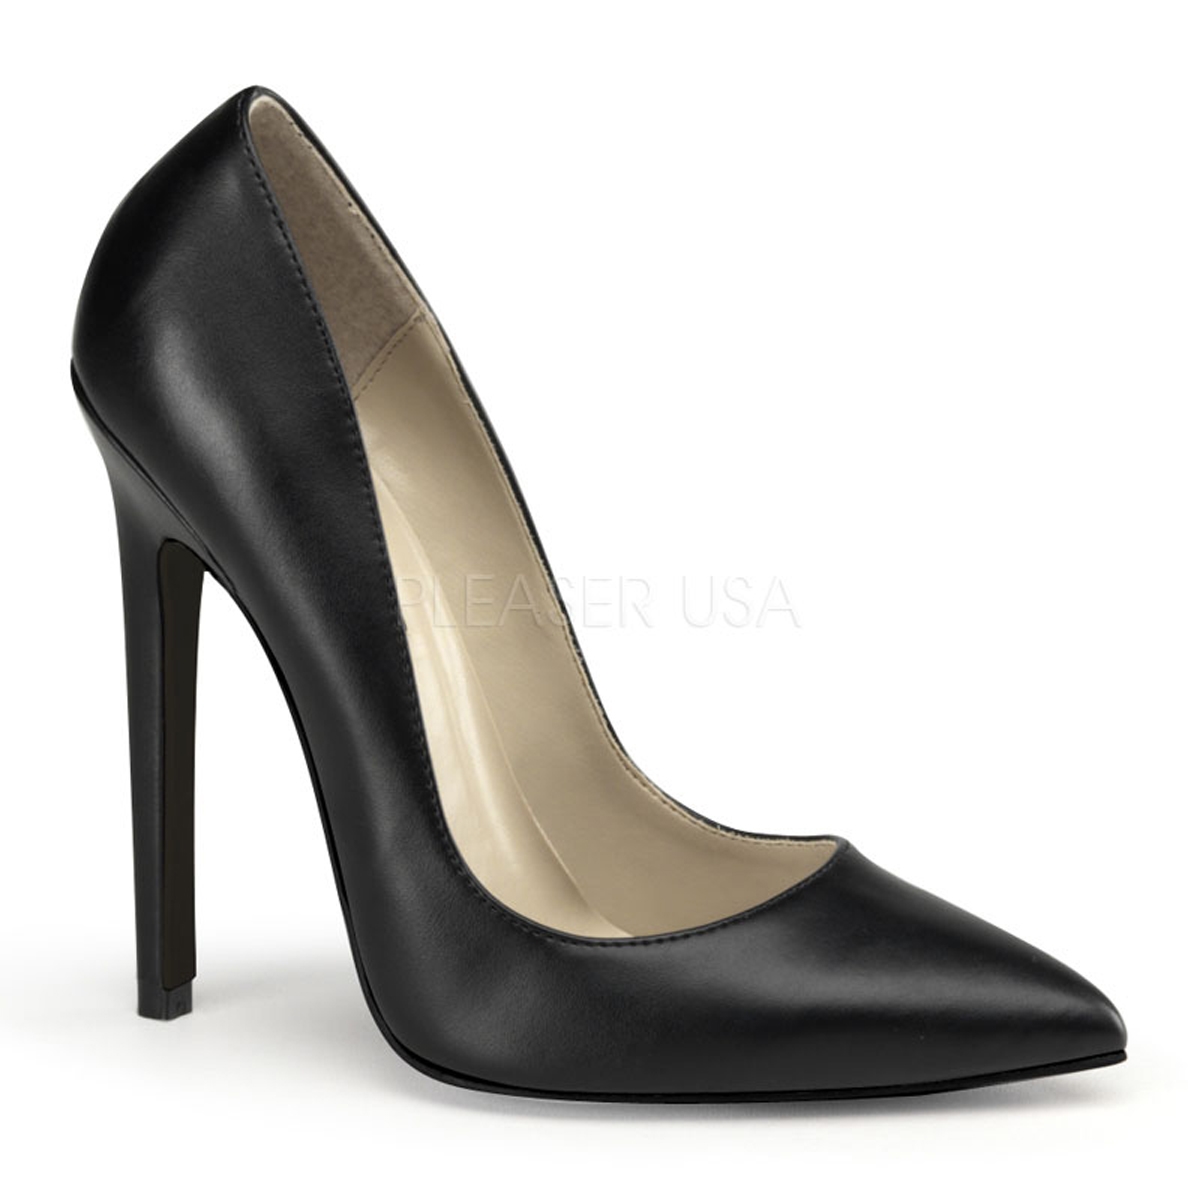 5 inch heels - Gold, Women's Fashion, Footwear, Heels on Carousell